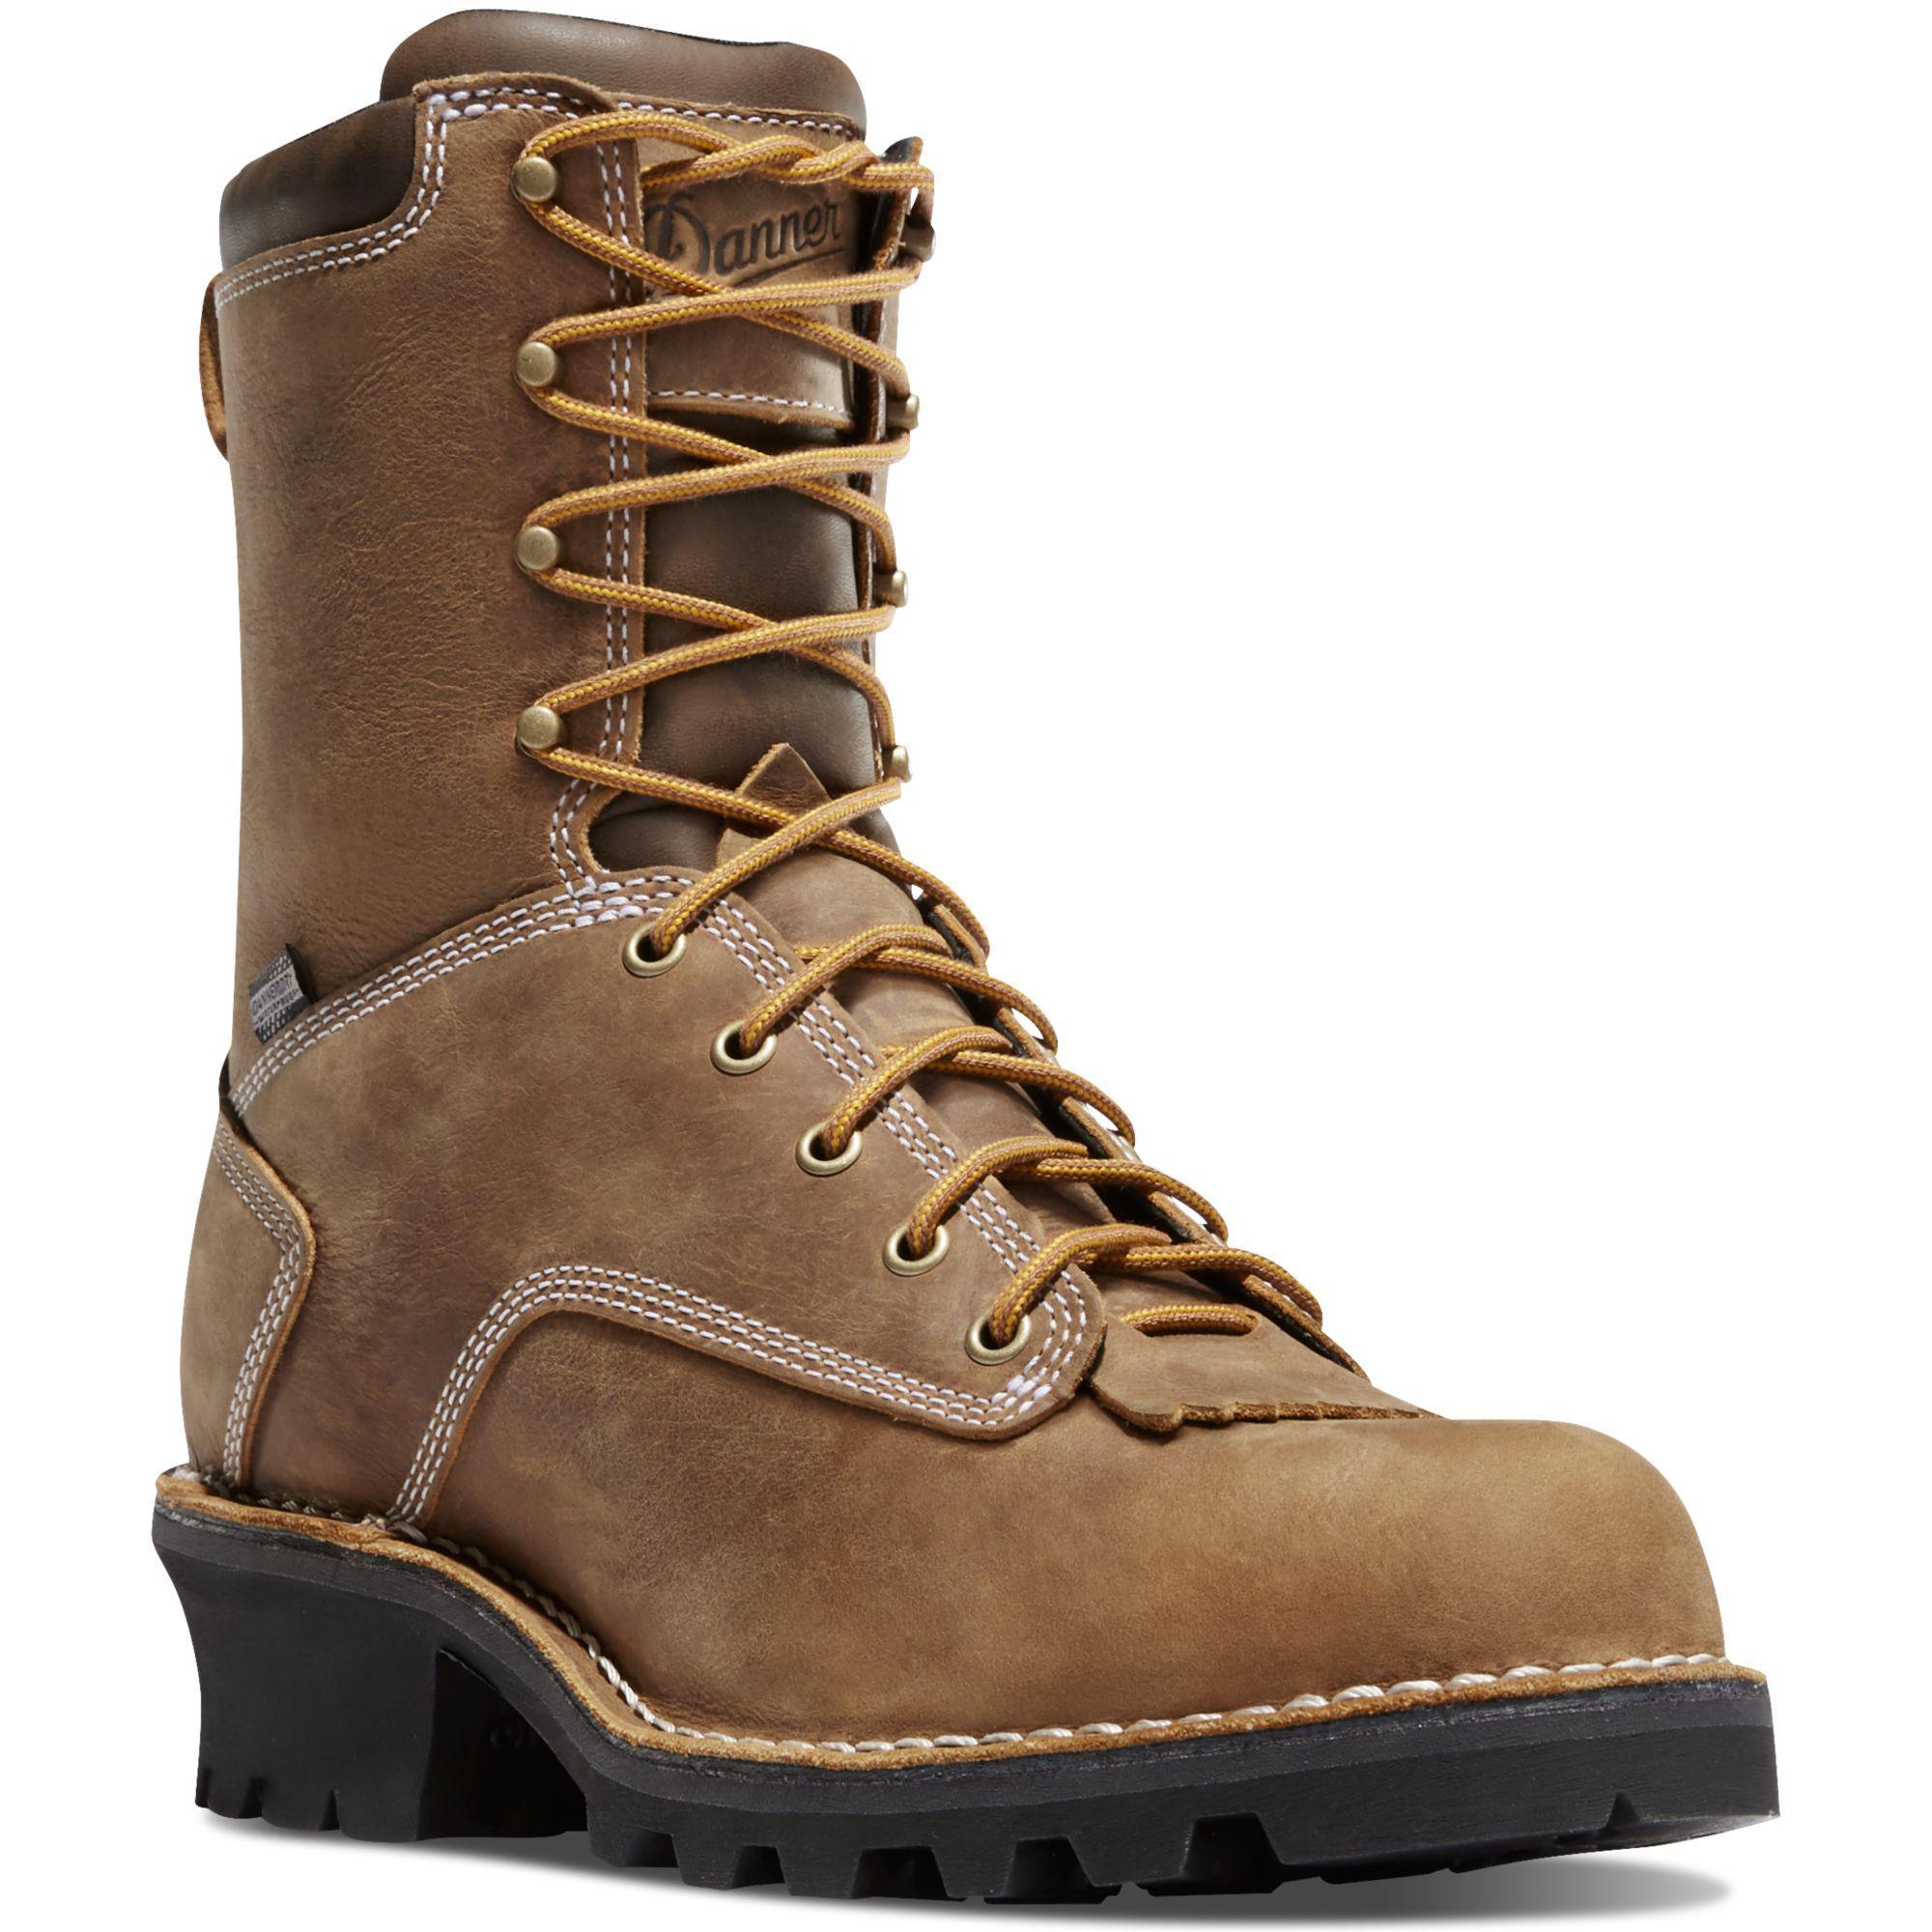 Danner Men's Logger Soft Toe WP Work Boot - Brown - 15439 7 / Medium / Brown - Overlook Boots